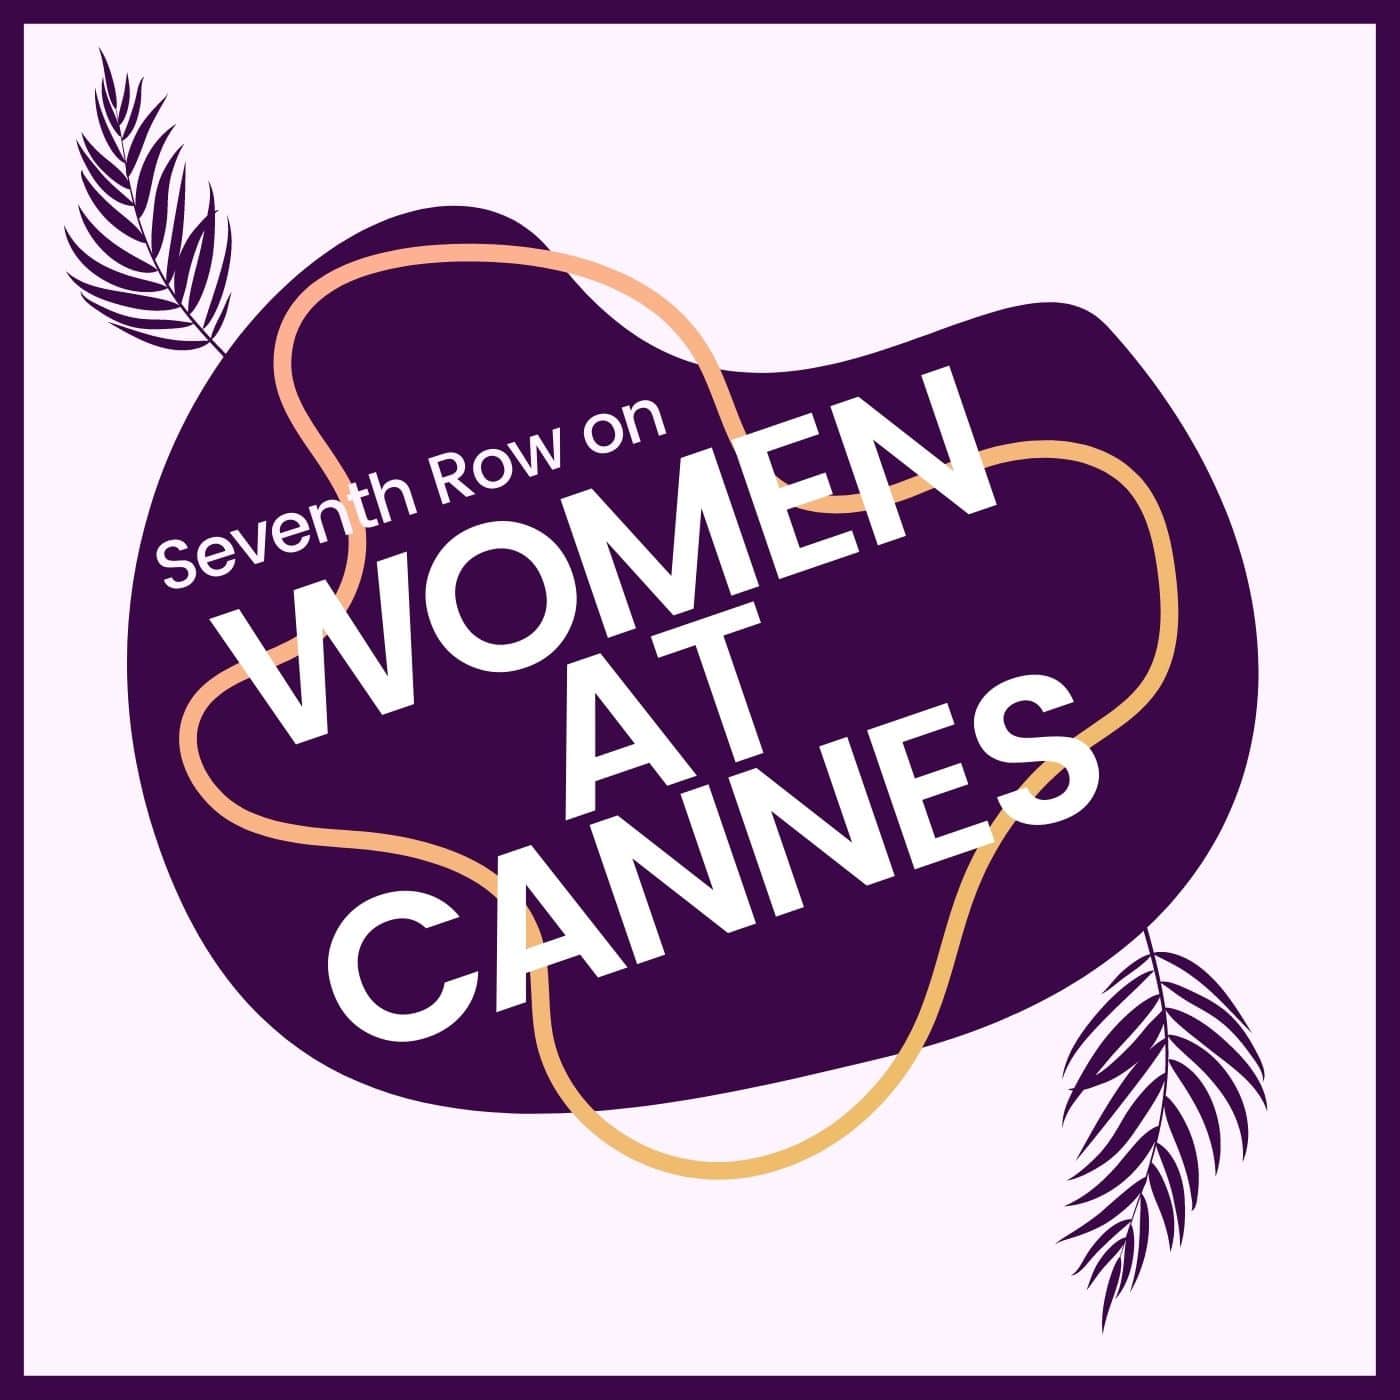 The Women at Cannes podcast seasons logo, a podcast season exploring Women directors at Cannes, like Céline Devaux.